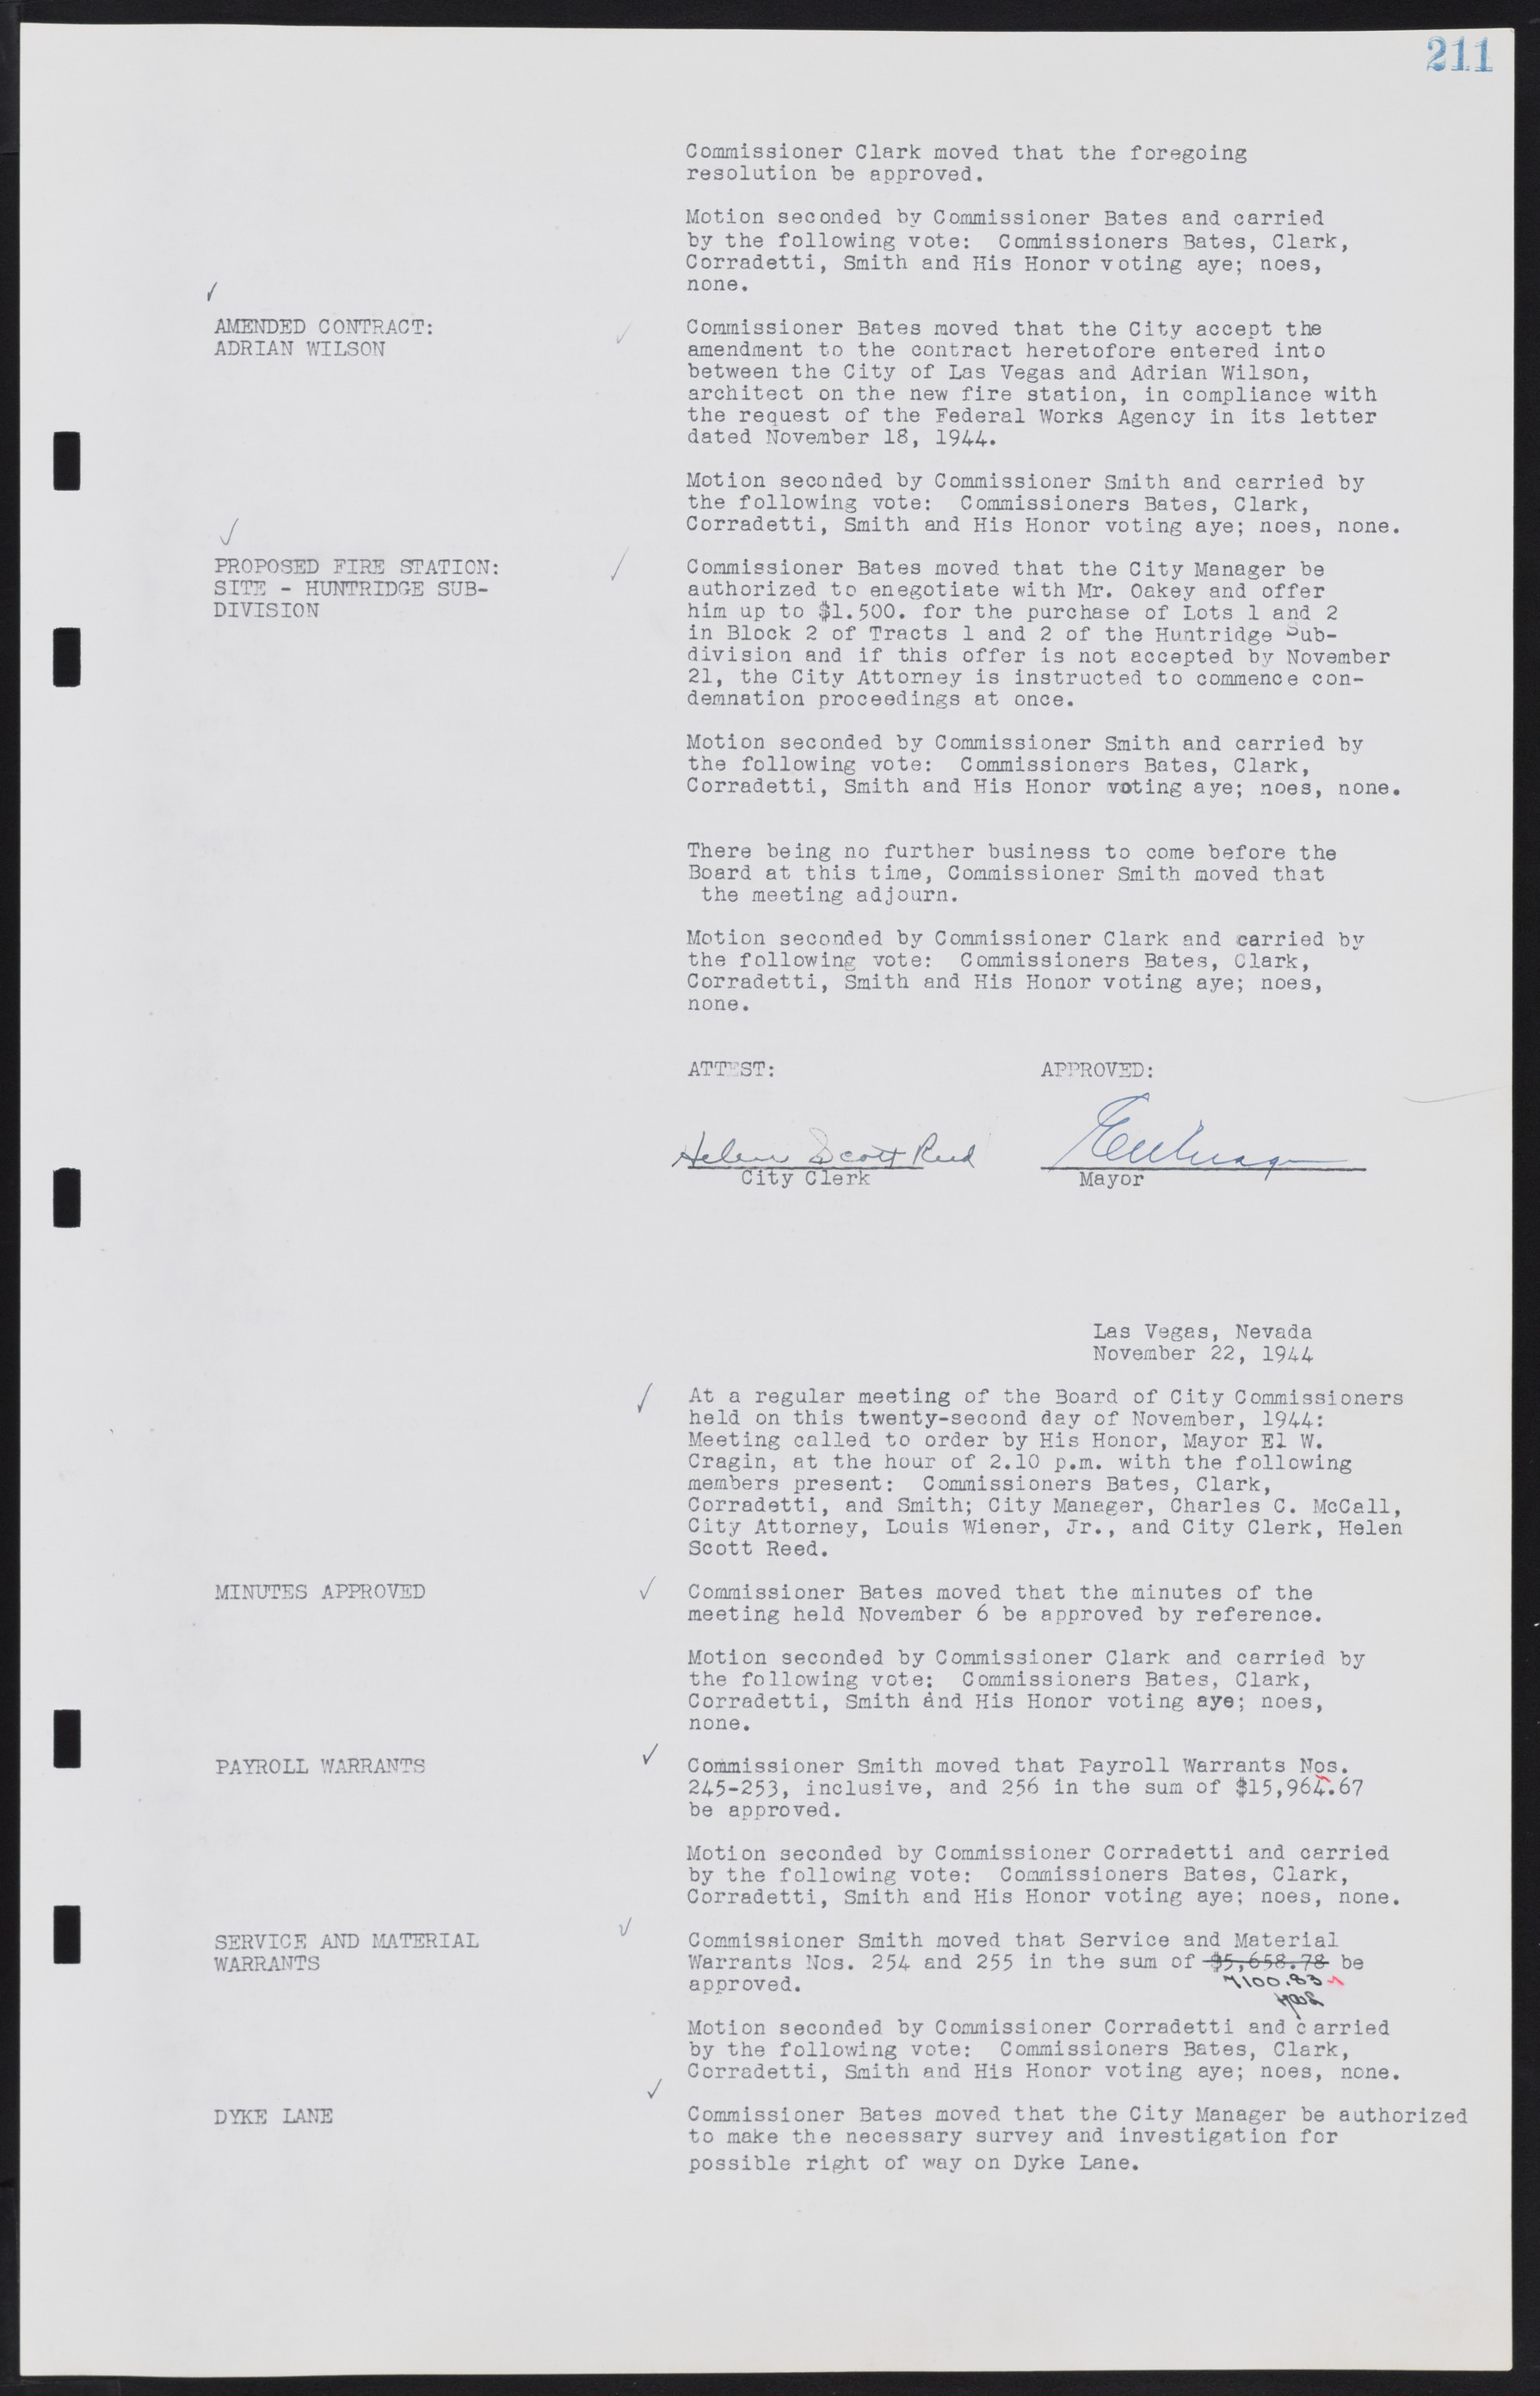 Las Vegas City Commission Minutes, August 11, 1942 to December 30, 1946, lvc000005-230